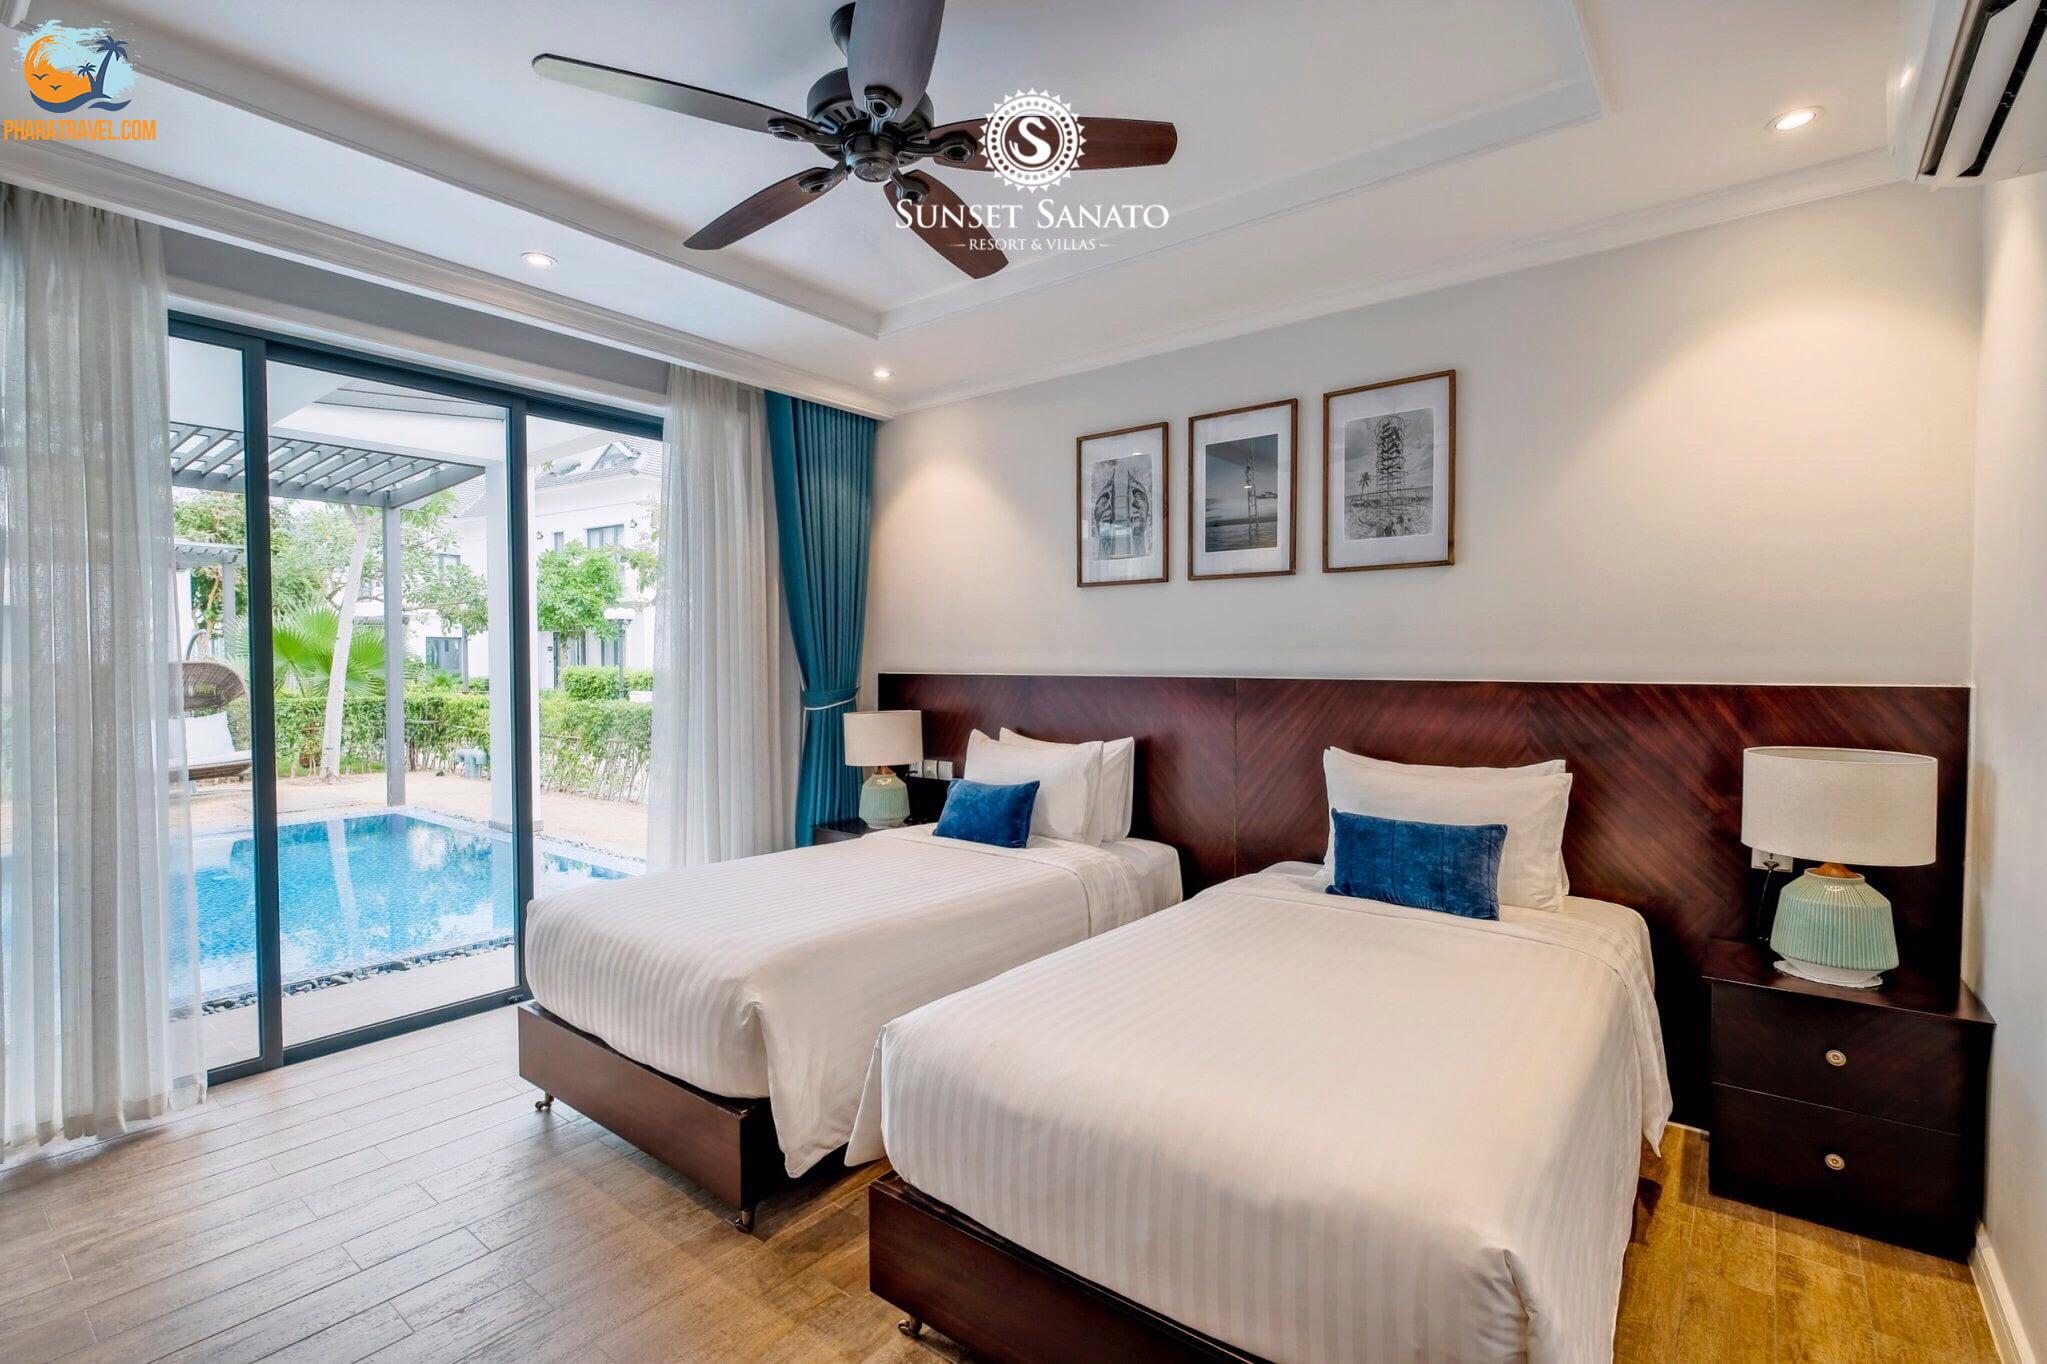 Top 20 biệt thự villa Phú Quốc giá rẻ gần biển có cho thuê nguyên căn